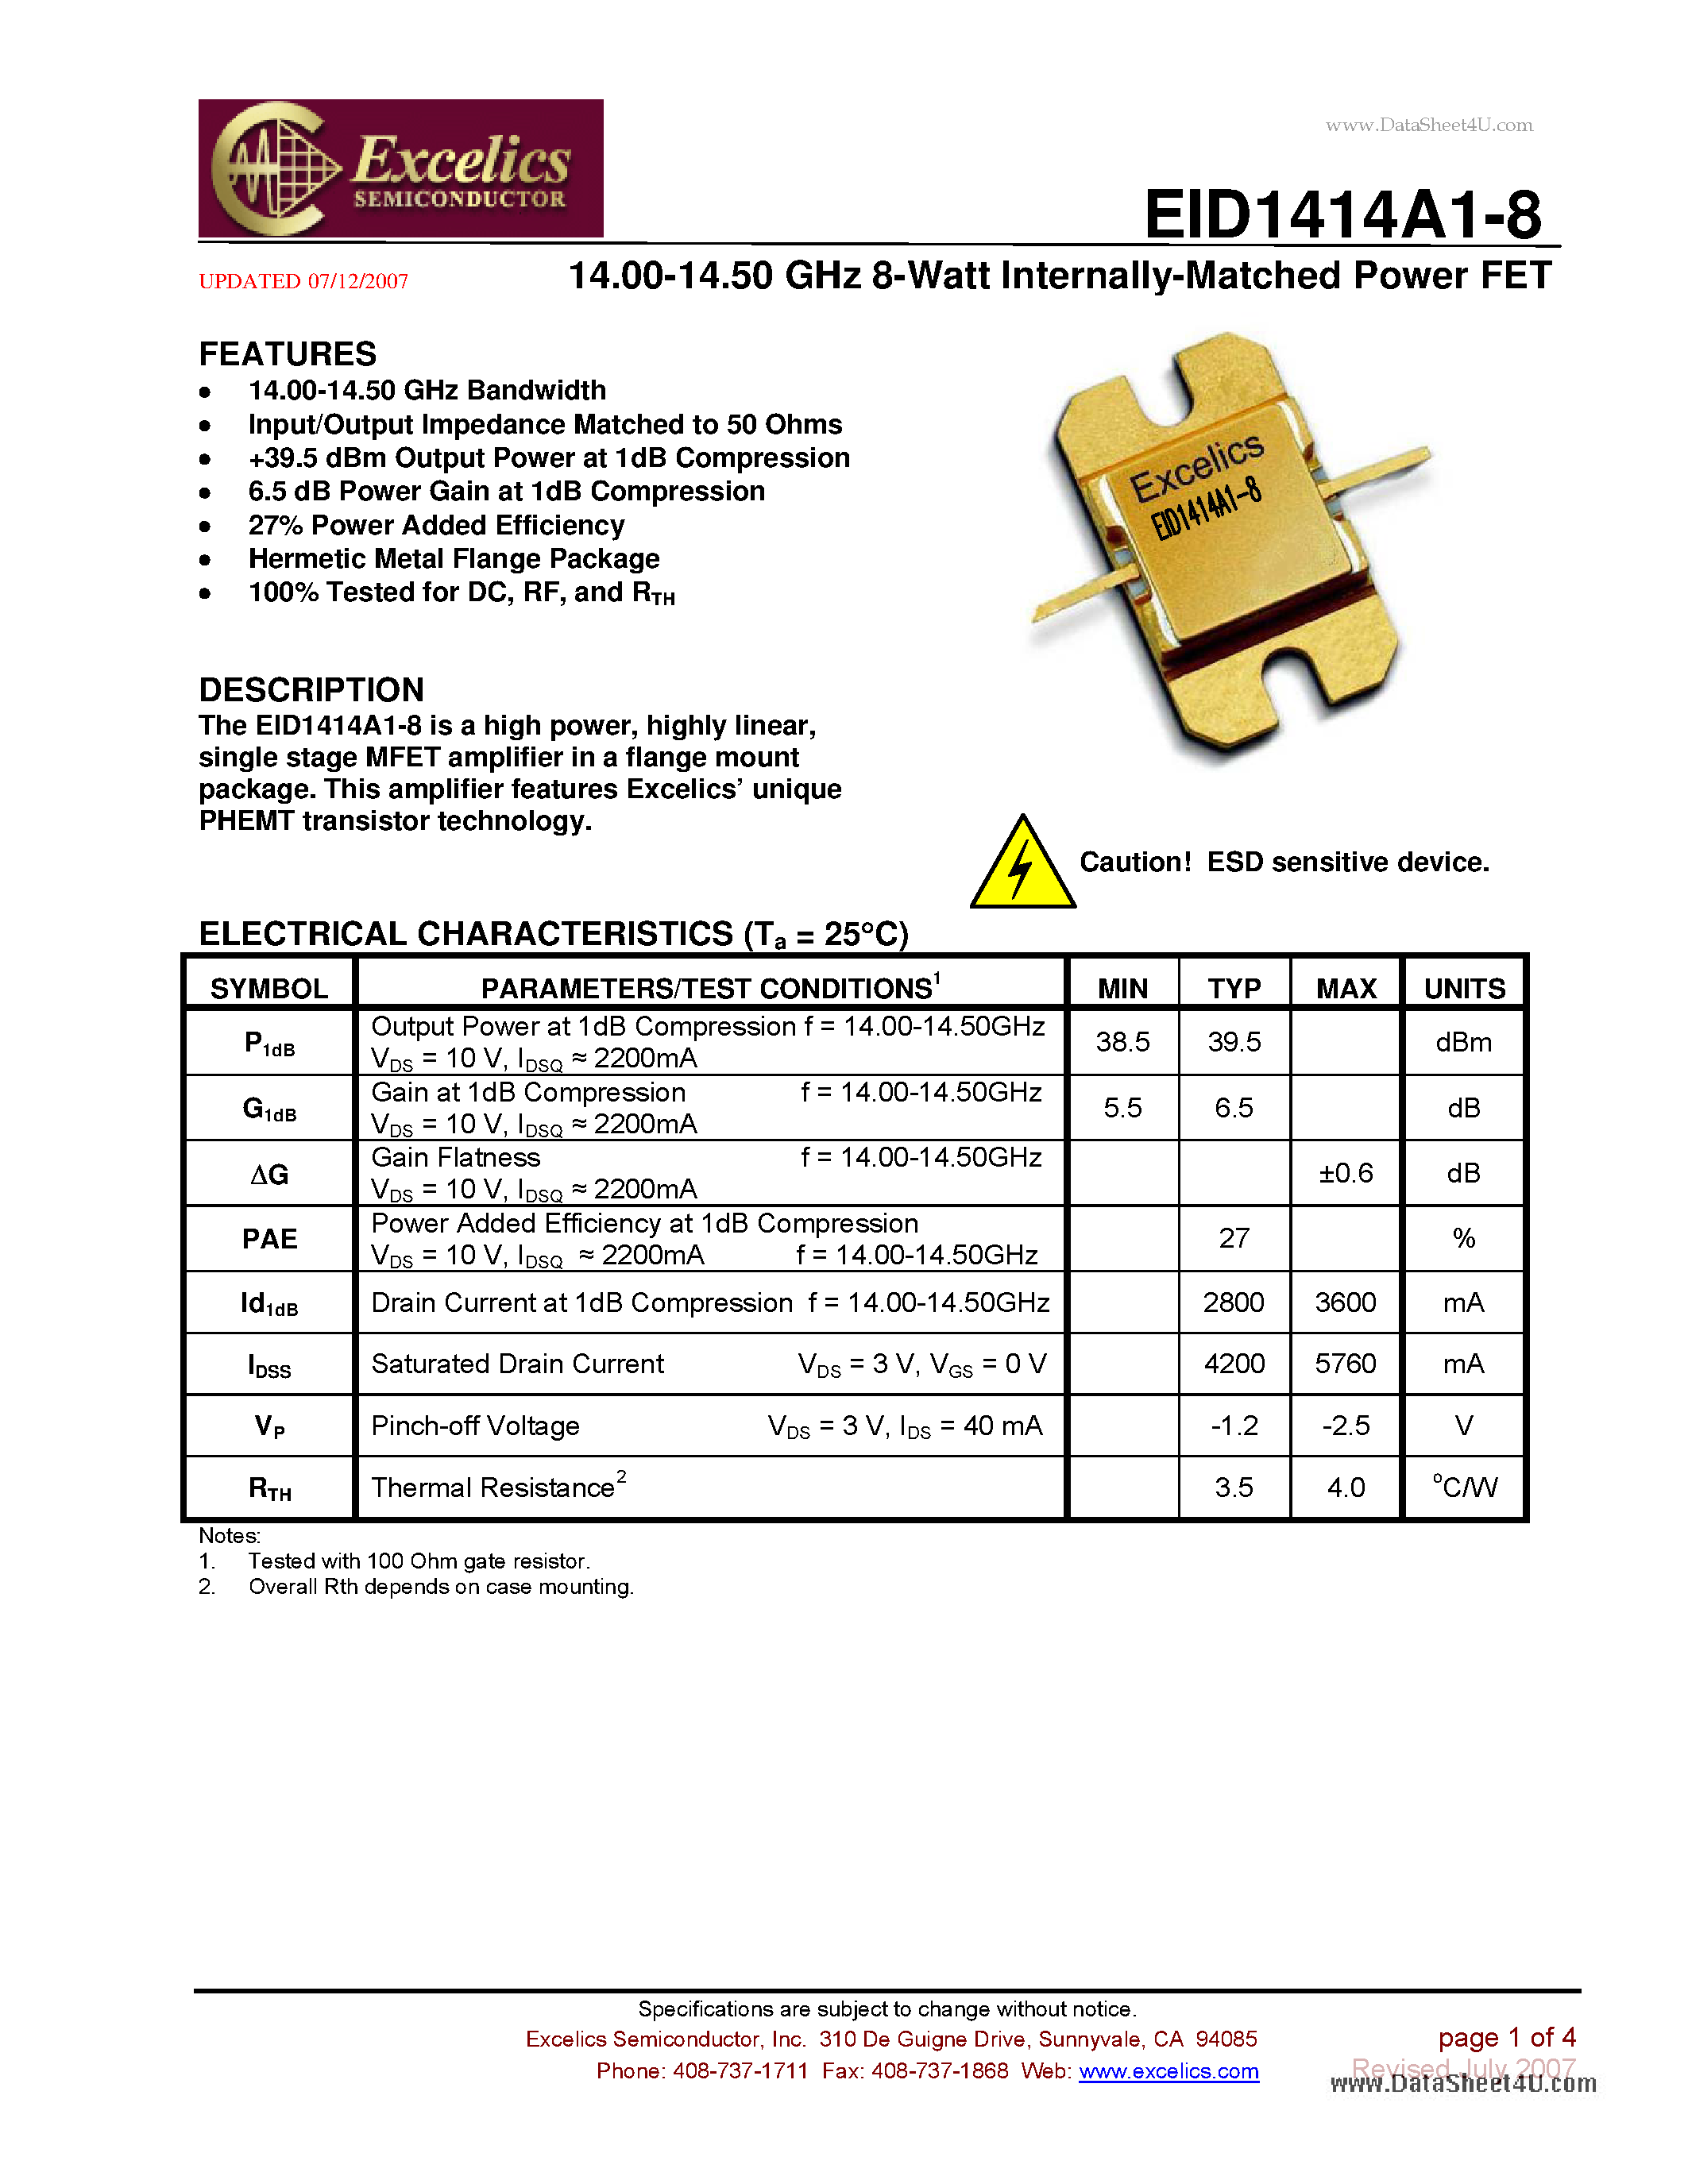 Даташит EID1414A1-8 - 14.00-14.50 GHz 8-Watt Internally-Matched Power FET страница 1